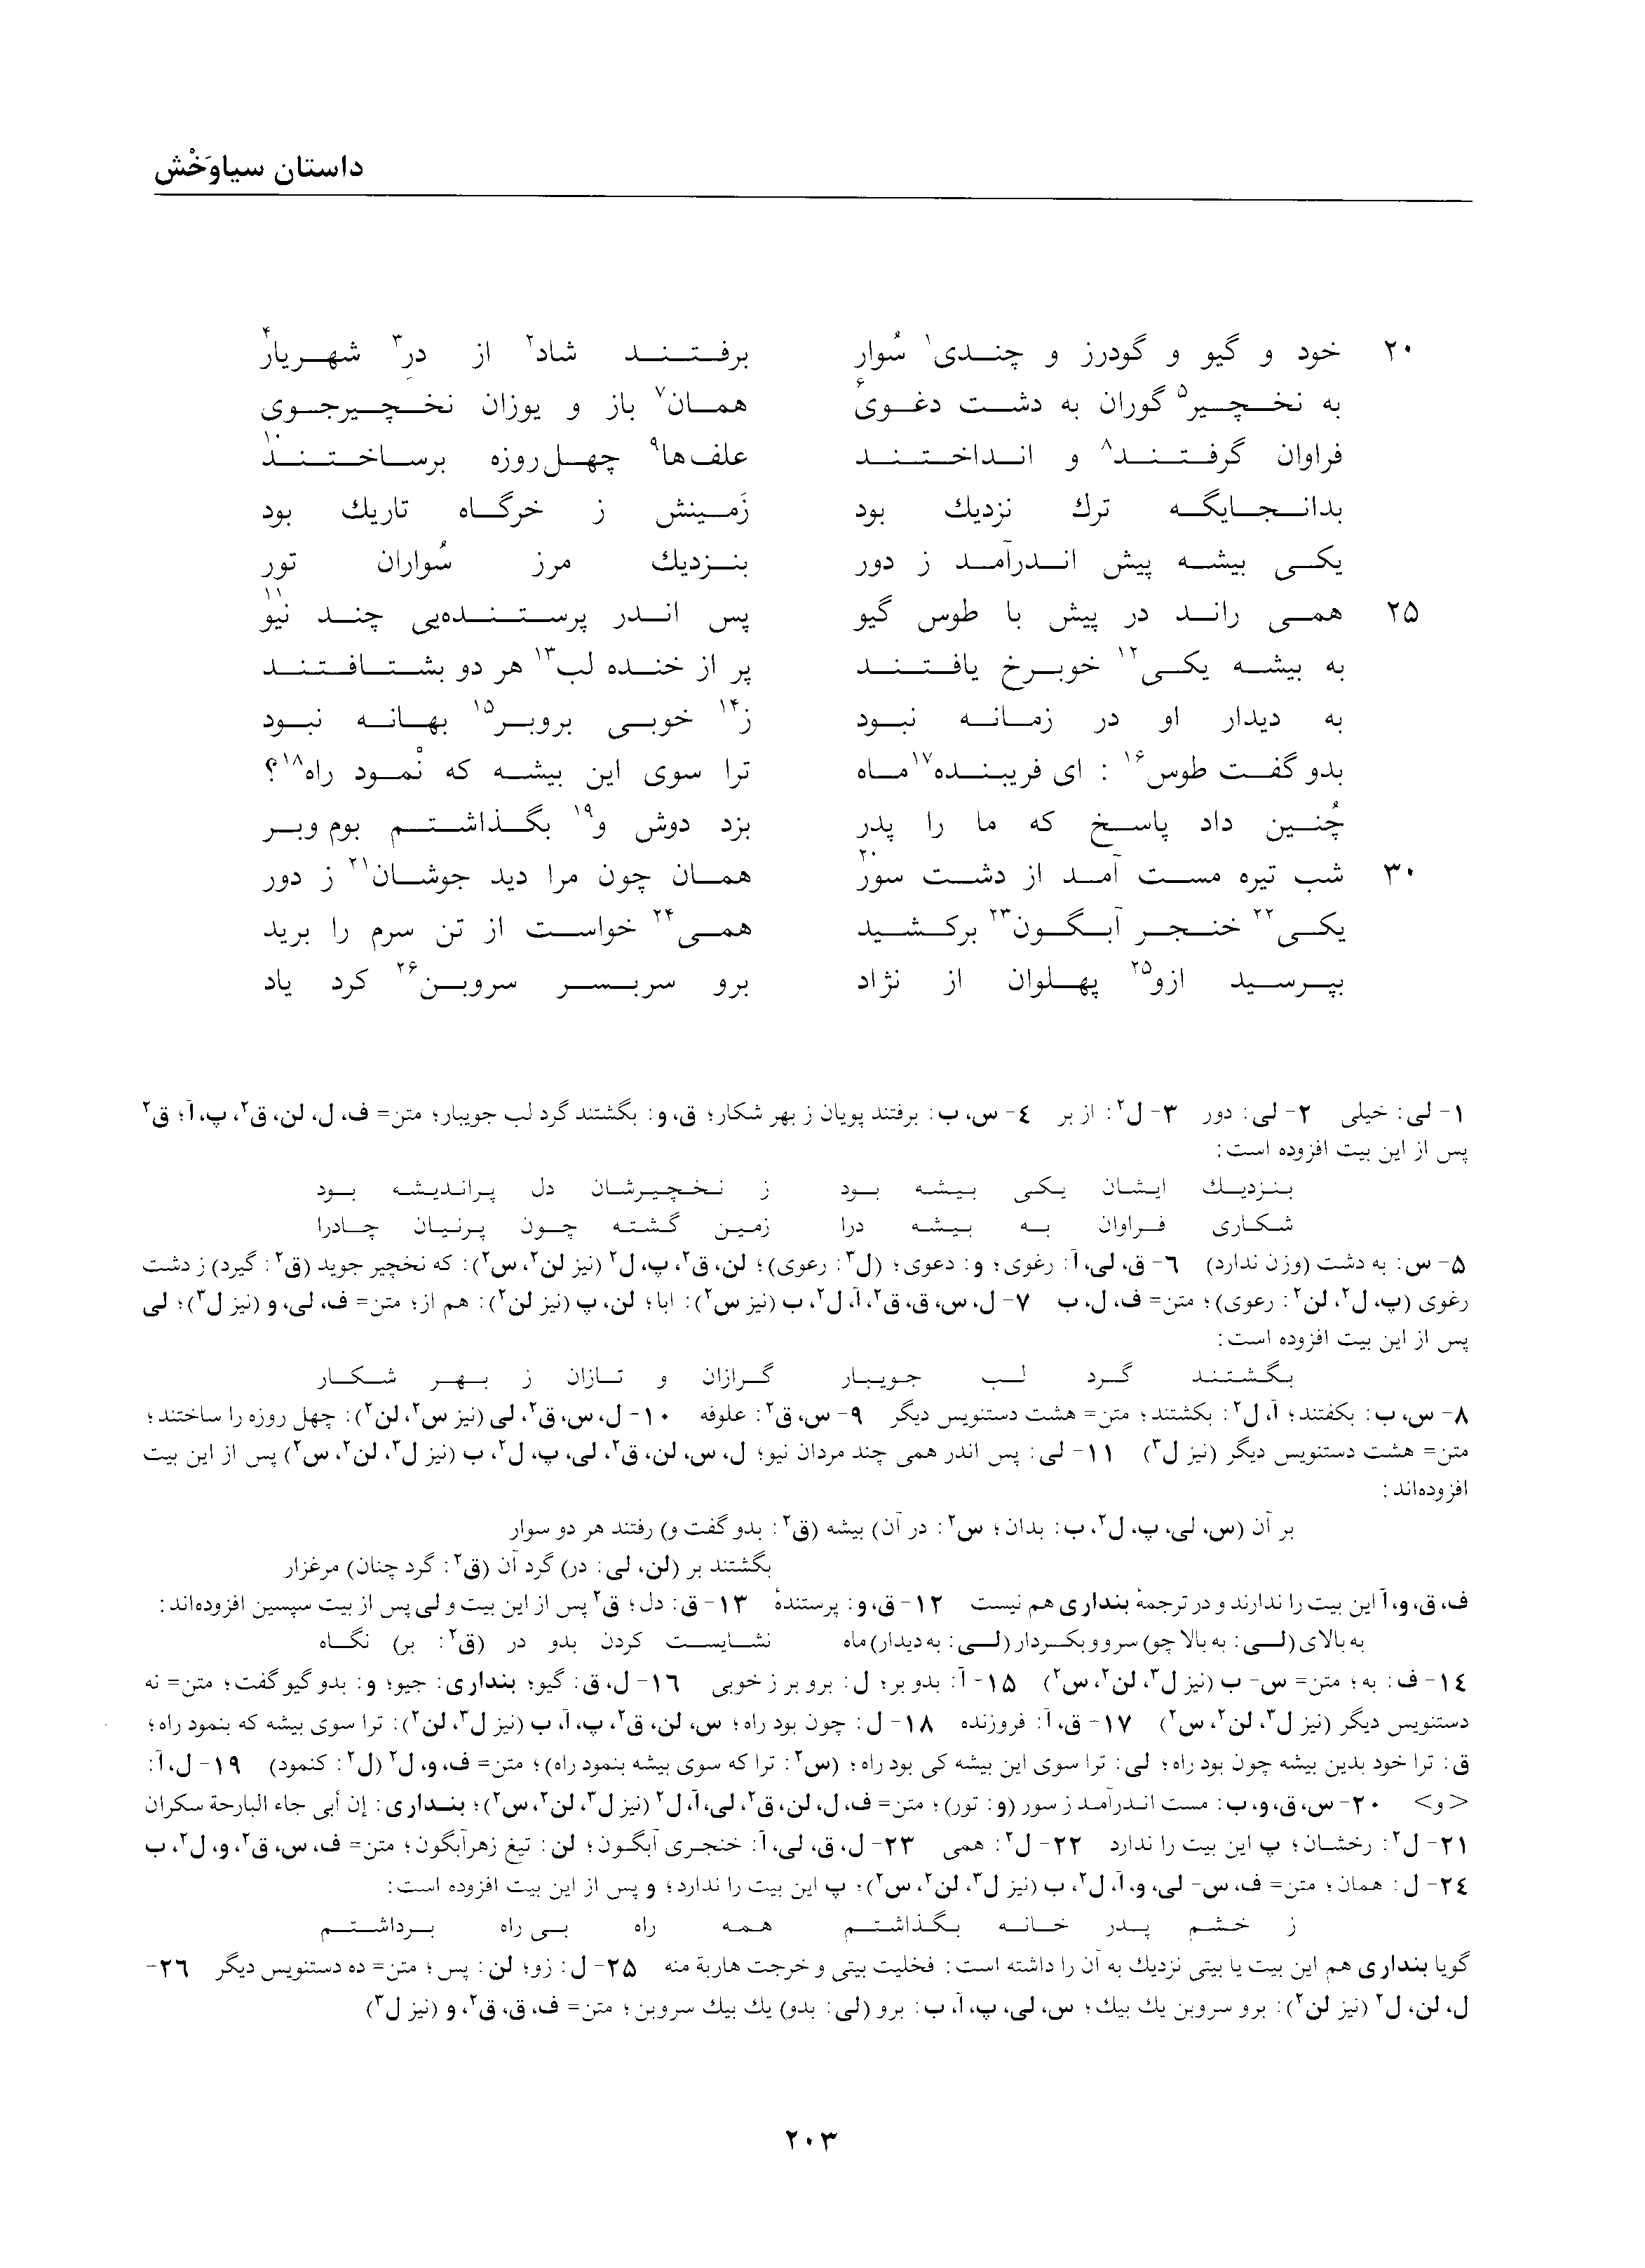 vol. 2, p. 203